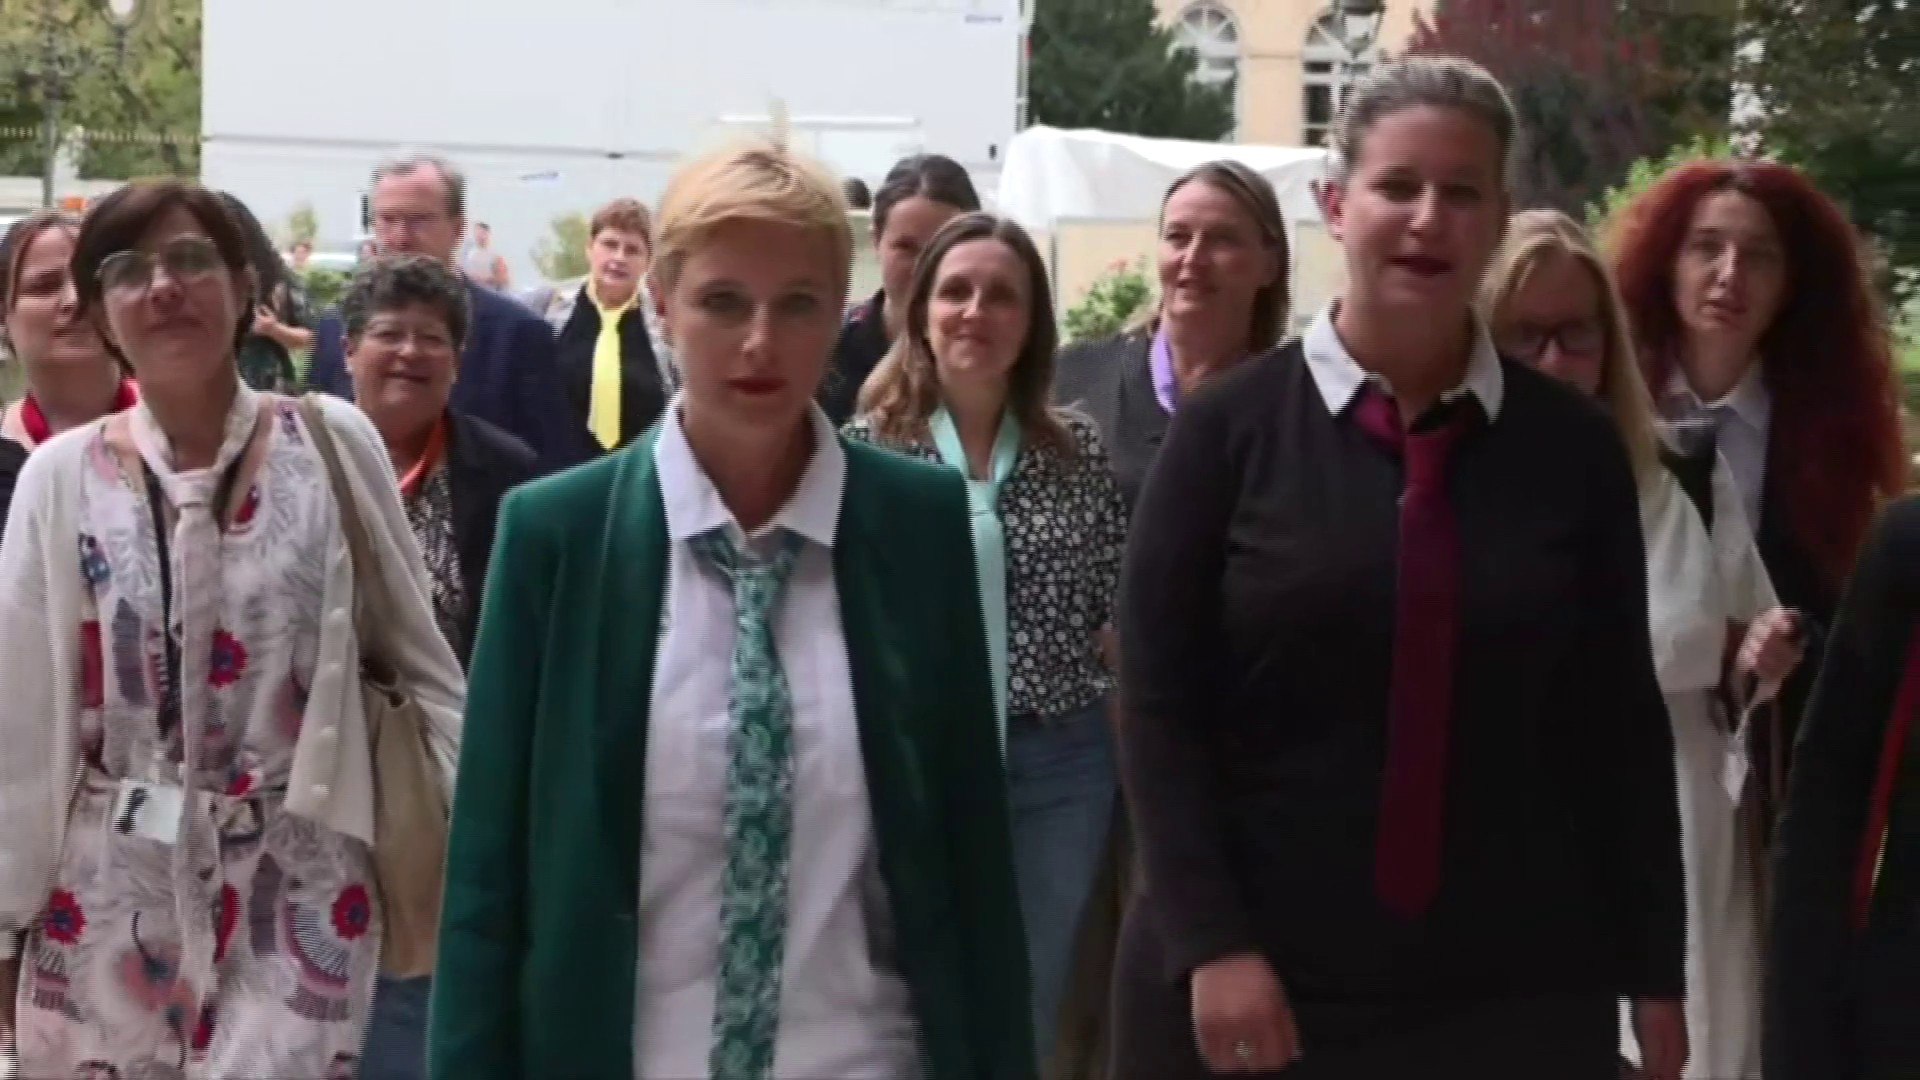 Les députées LFI arrivent en cravate à l'Assemblée nationale - Vidéo  Dailymotion